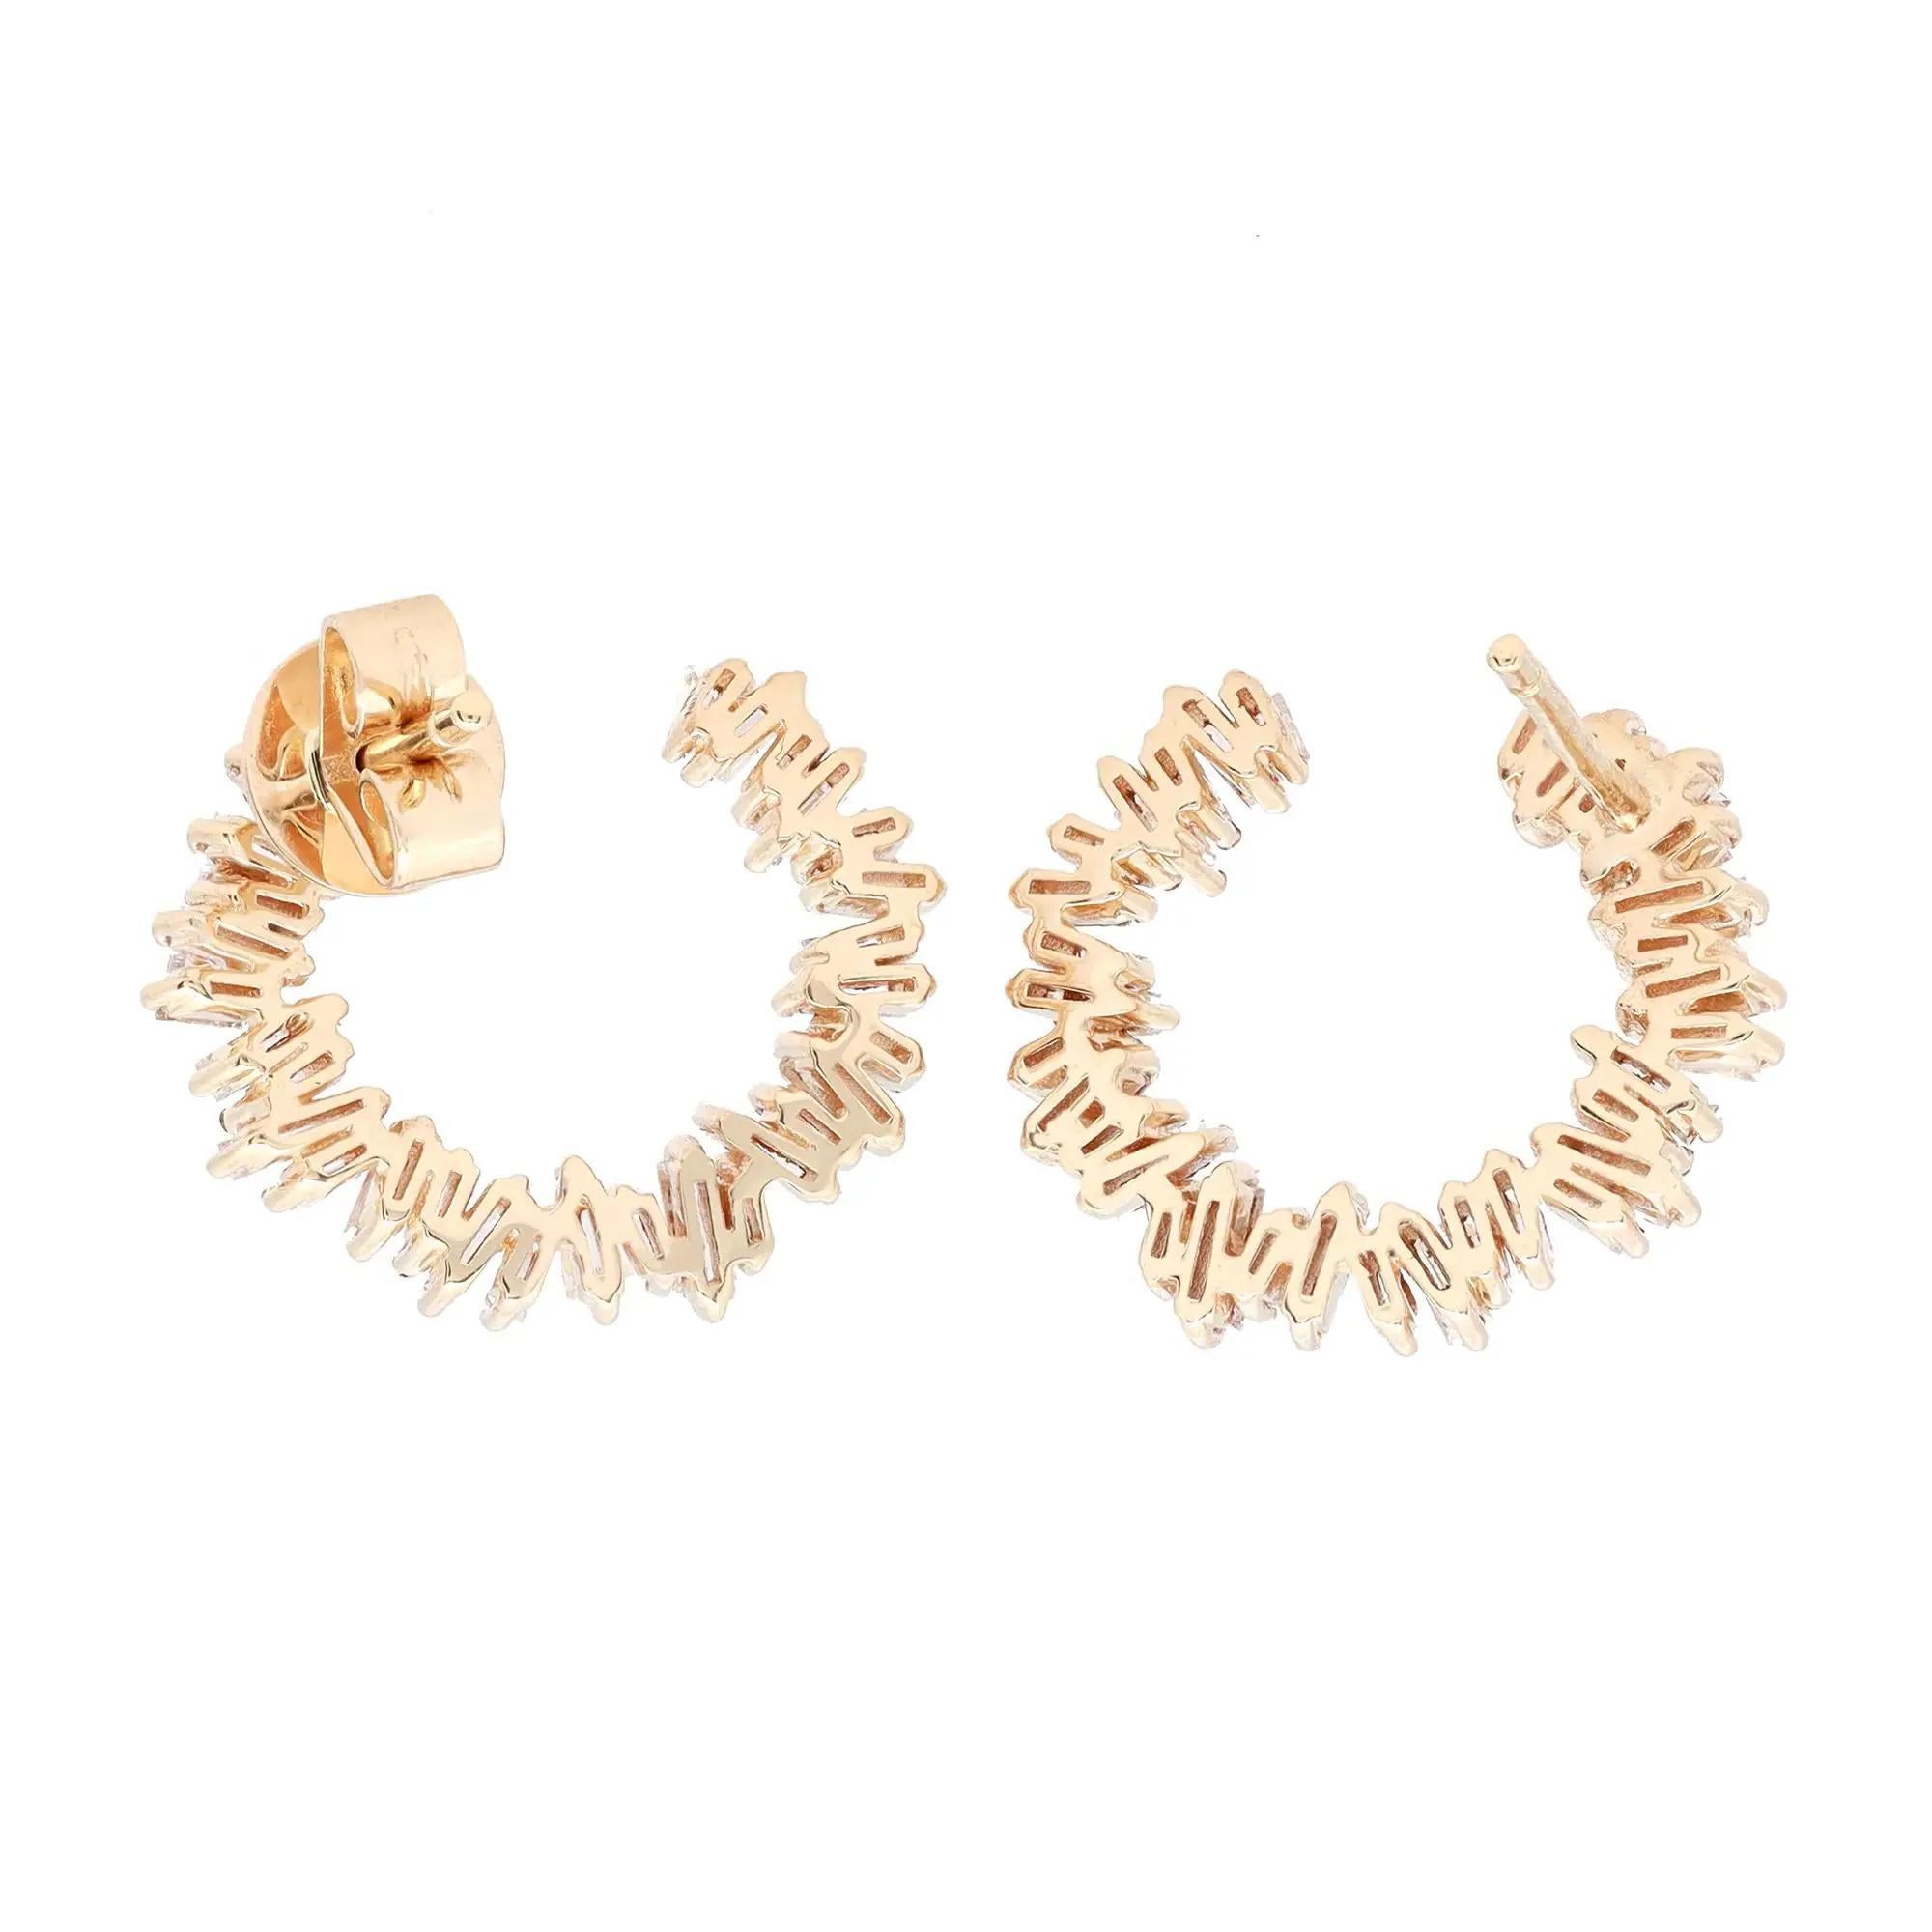 Modern Rachel Koen 0.96Cttw Baguette Cut Diamond Stud Earrings 18K Yellow Gold For Sale